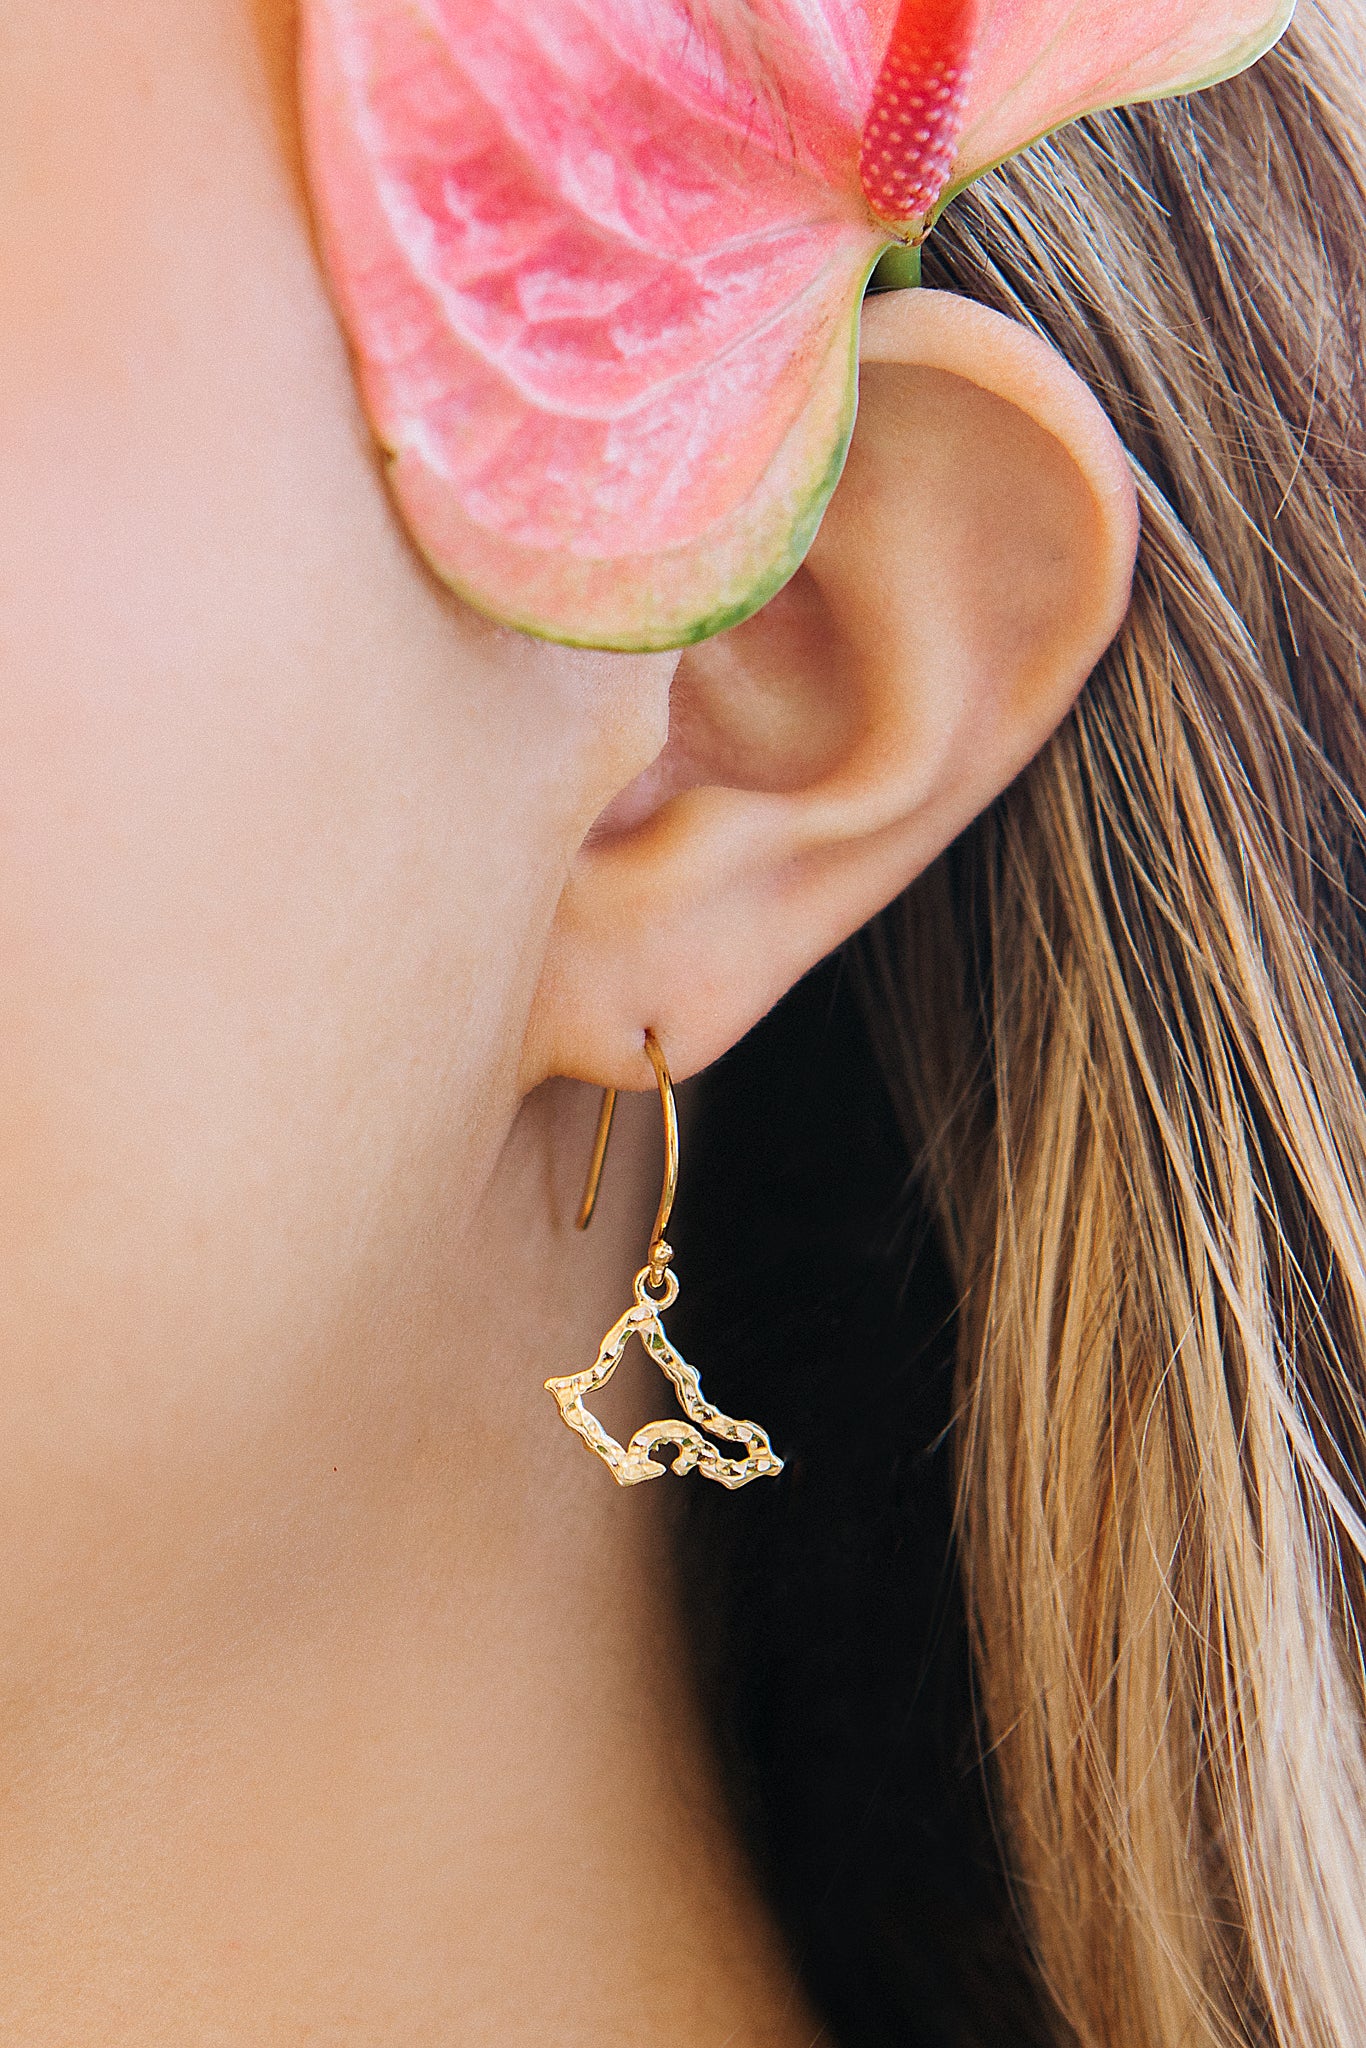 Oahu Petite Silhouette drop earrings